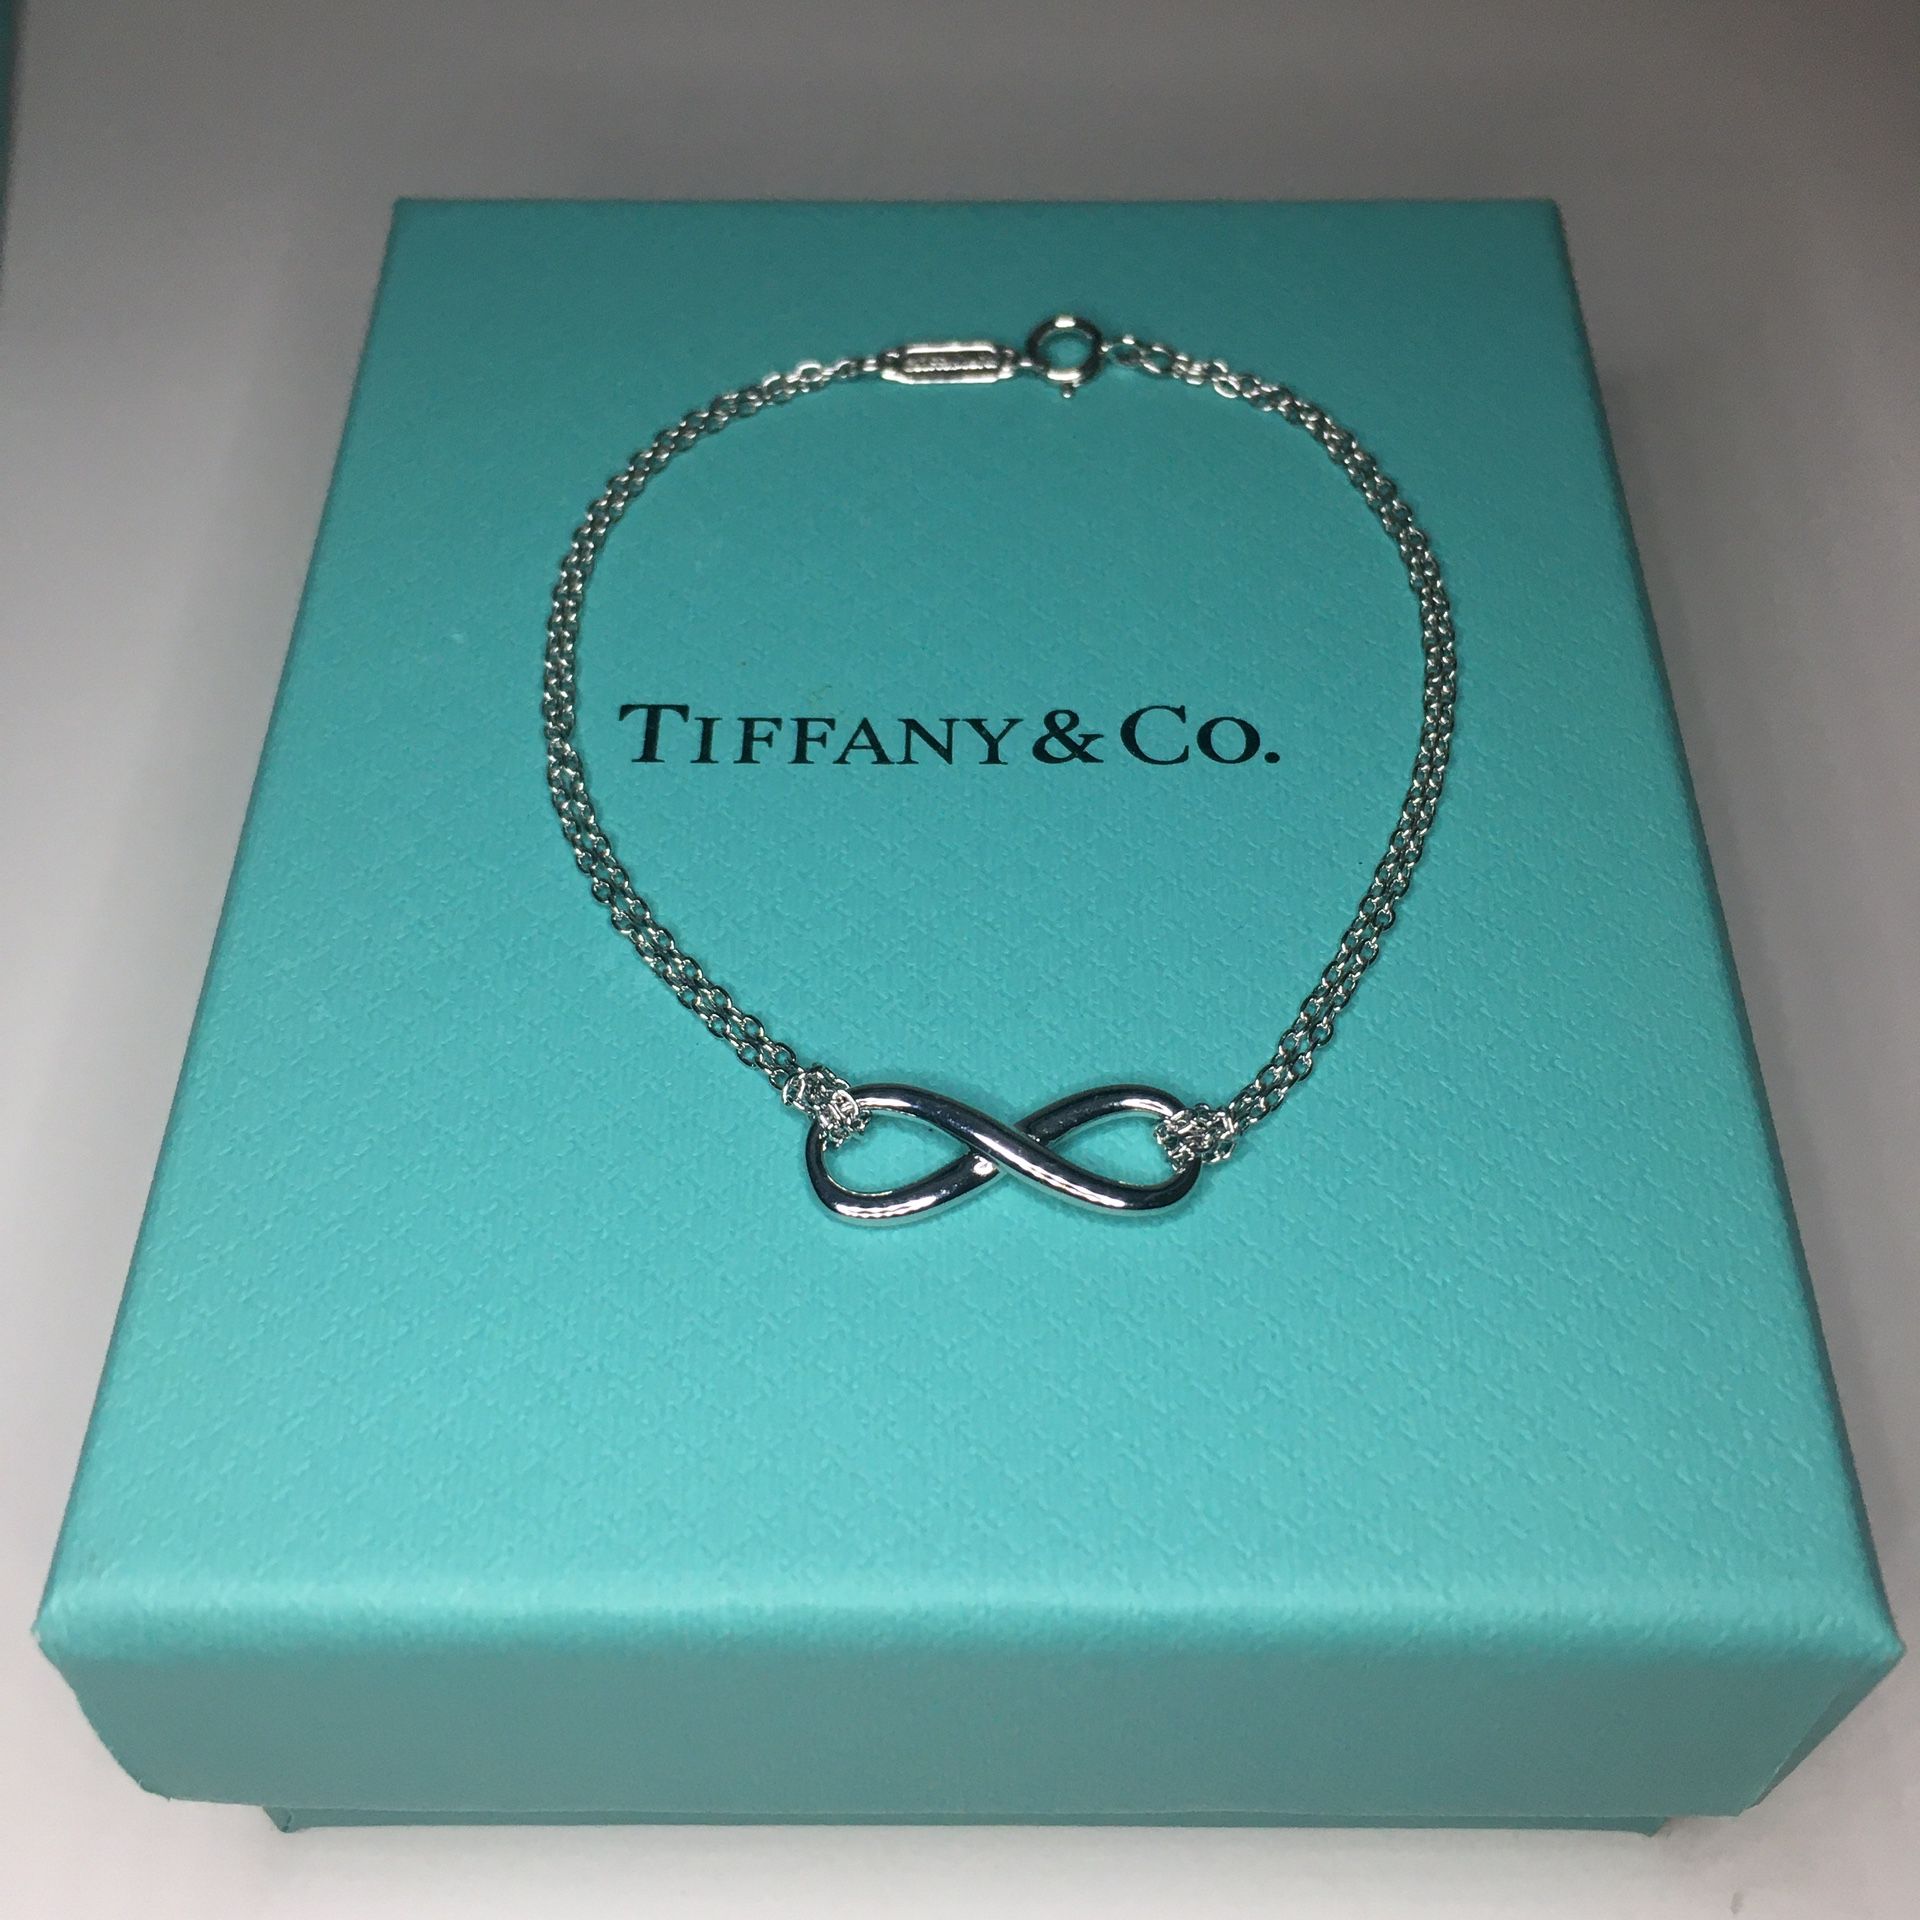 Tiffany & Co Infinity Bracelet Brand New